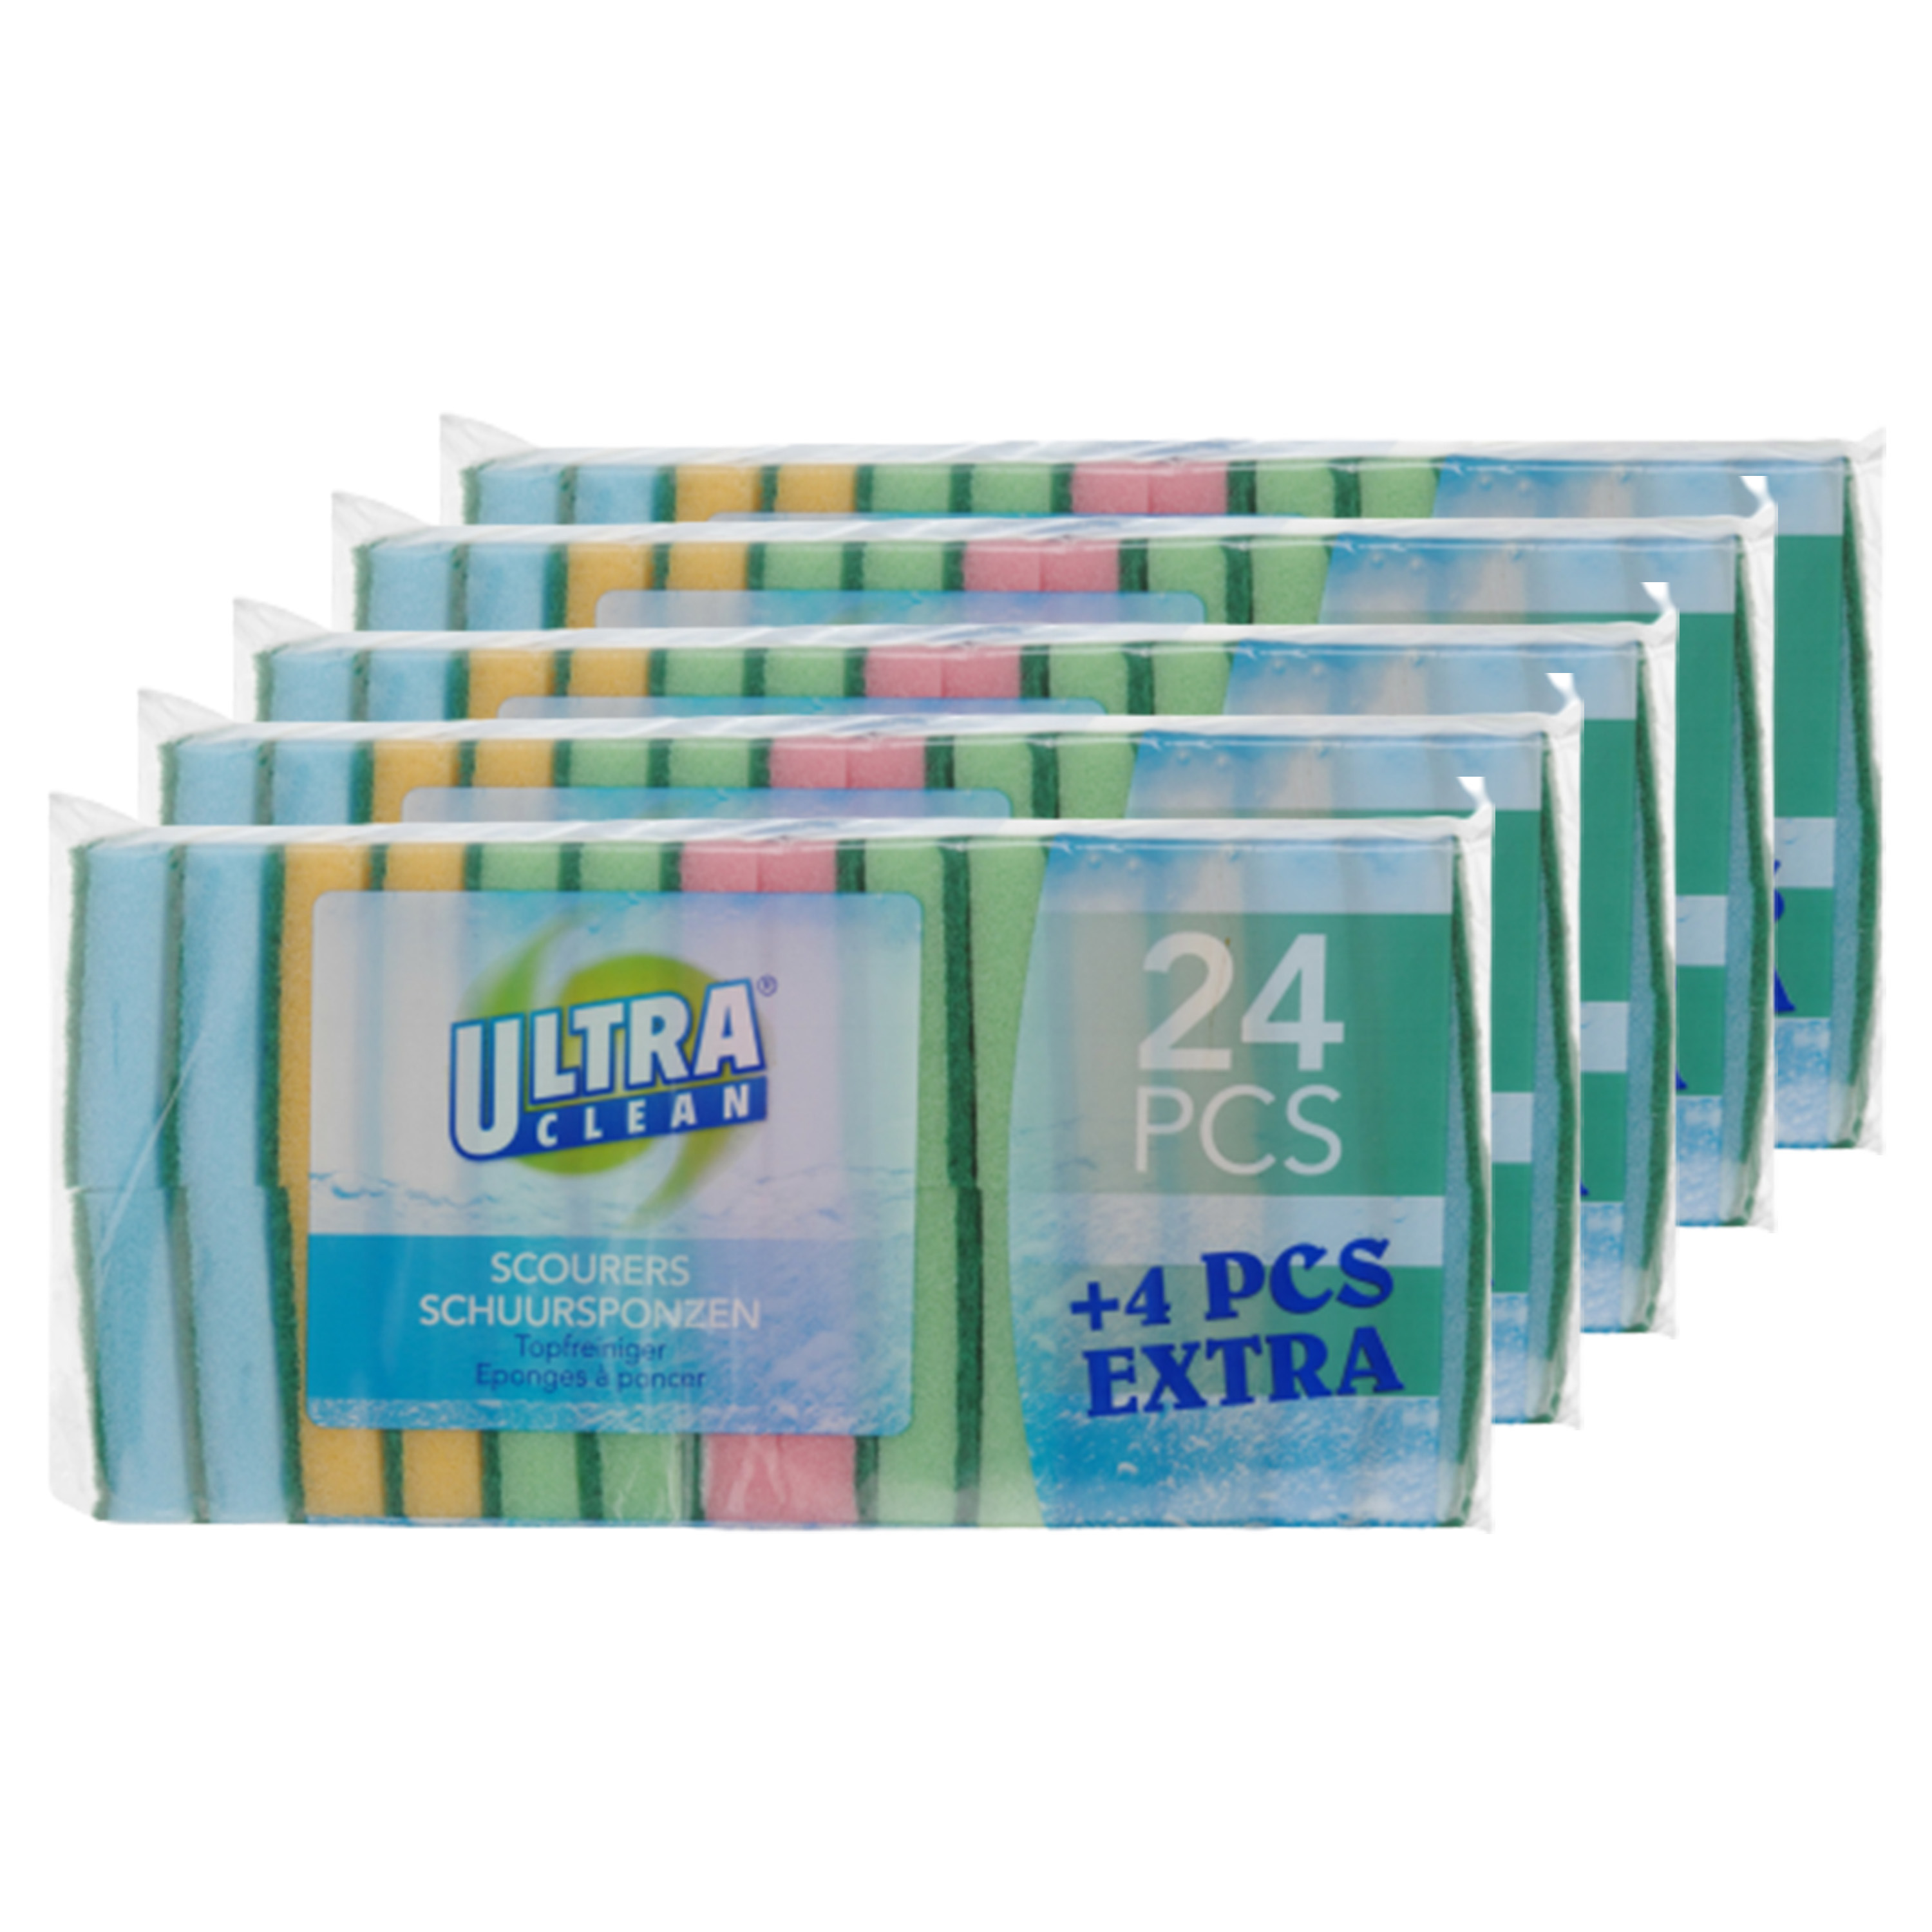 Ultra Clean Voordelige schuursponsjes/schoonmaaksponsjes - 120 x stuks -